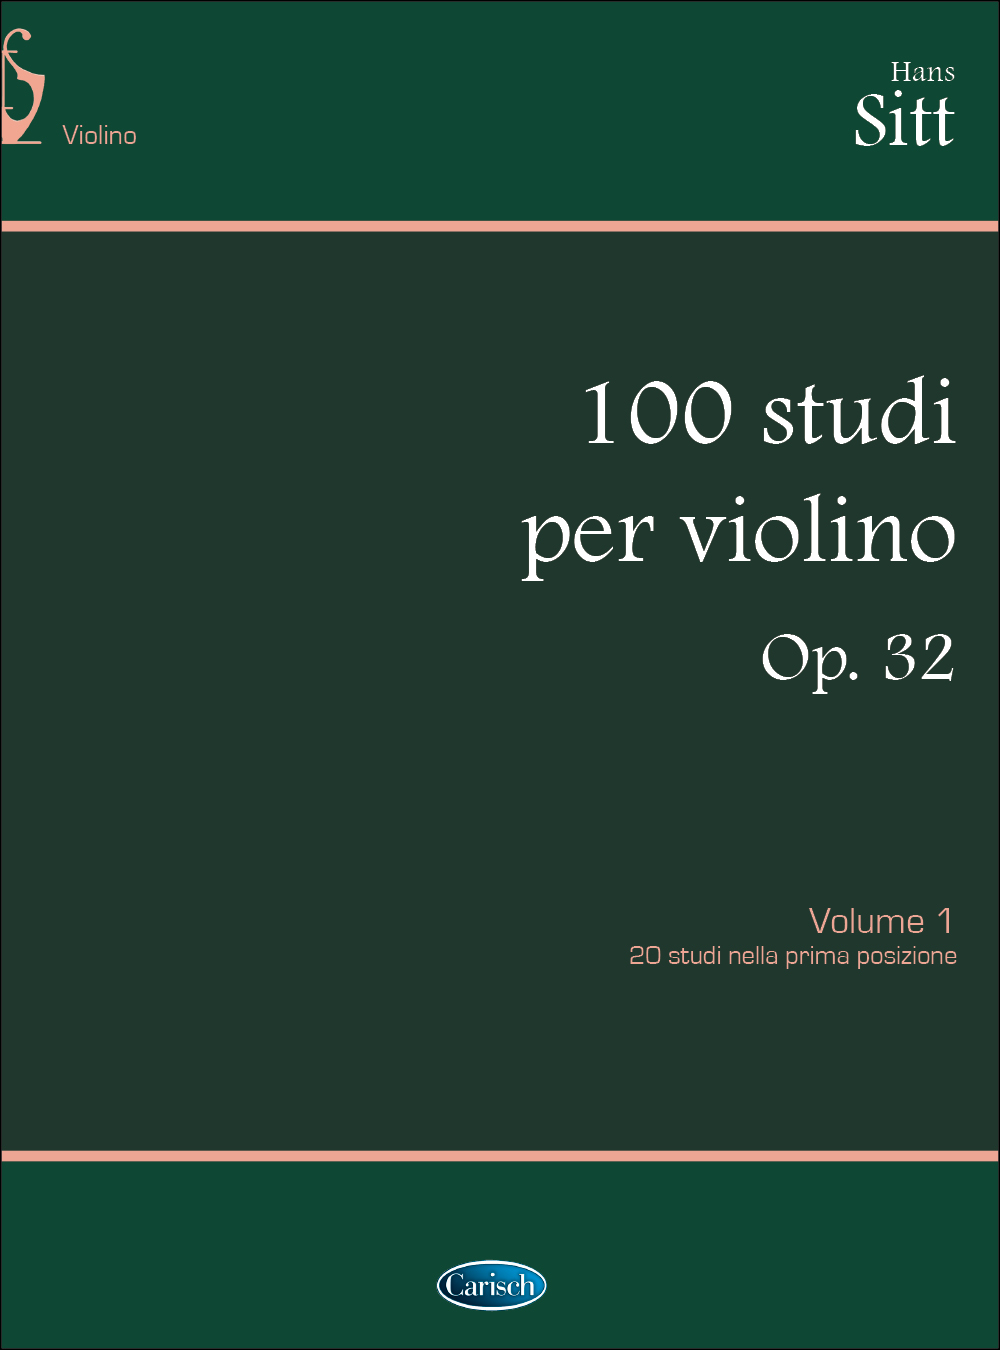 Hans Sitt: 100 Studi Op. 32 per Violino - Volume 1: Violin: Instrumental Tutor